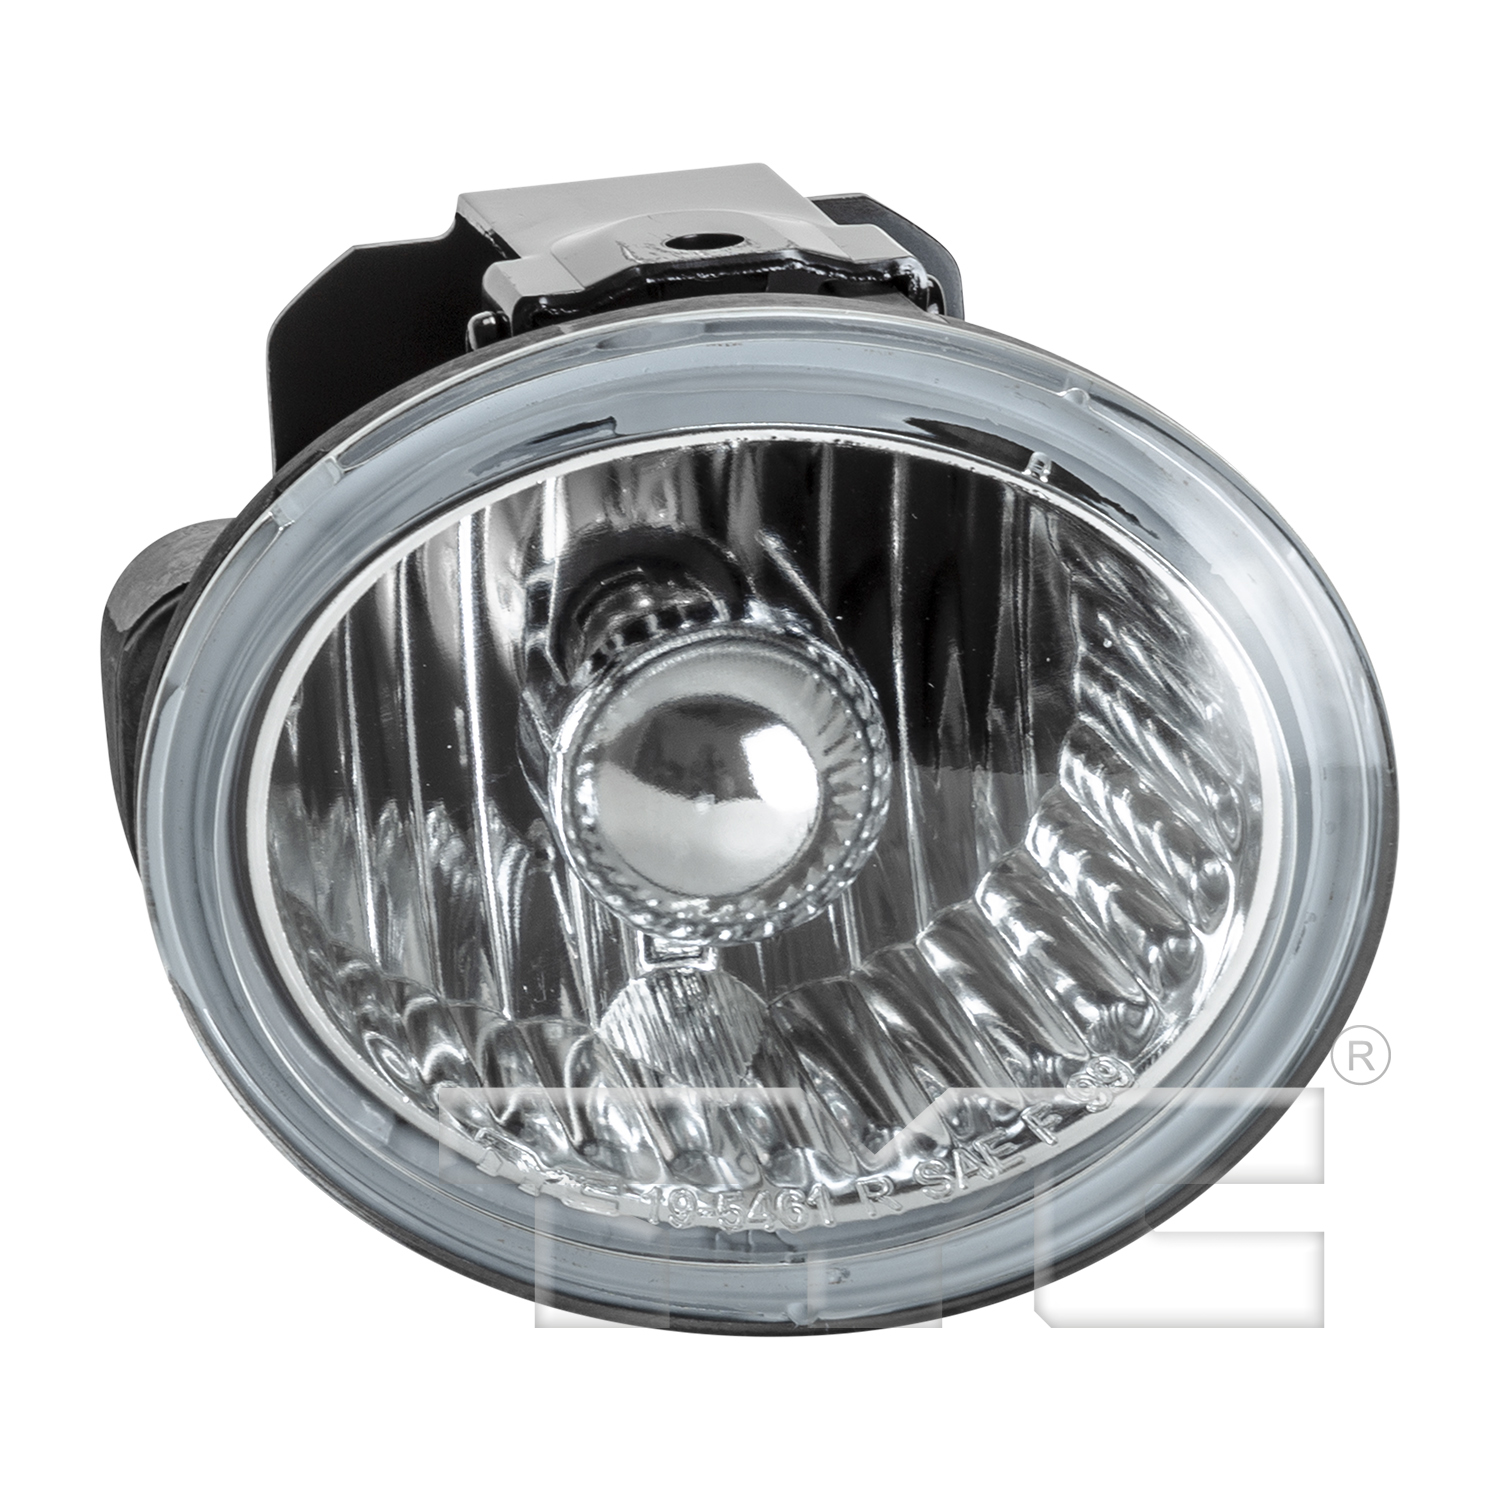 Aftermarket FOG LIGHTS for INFINITI - FX45, FX45,03-05,RT Fog lamp assy